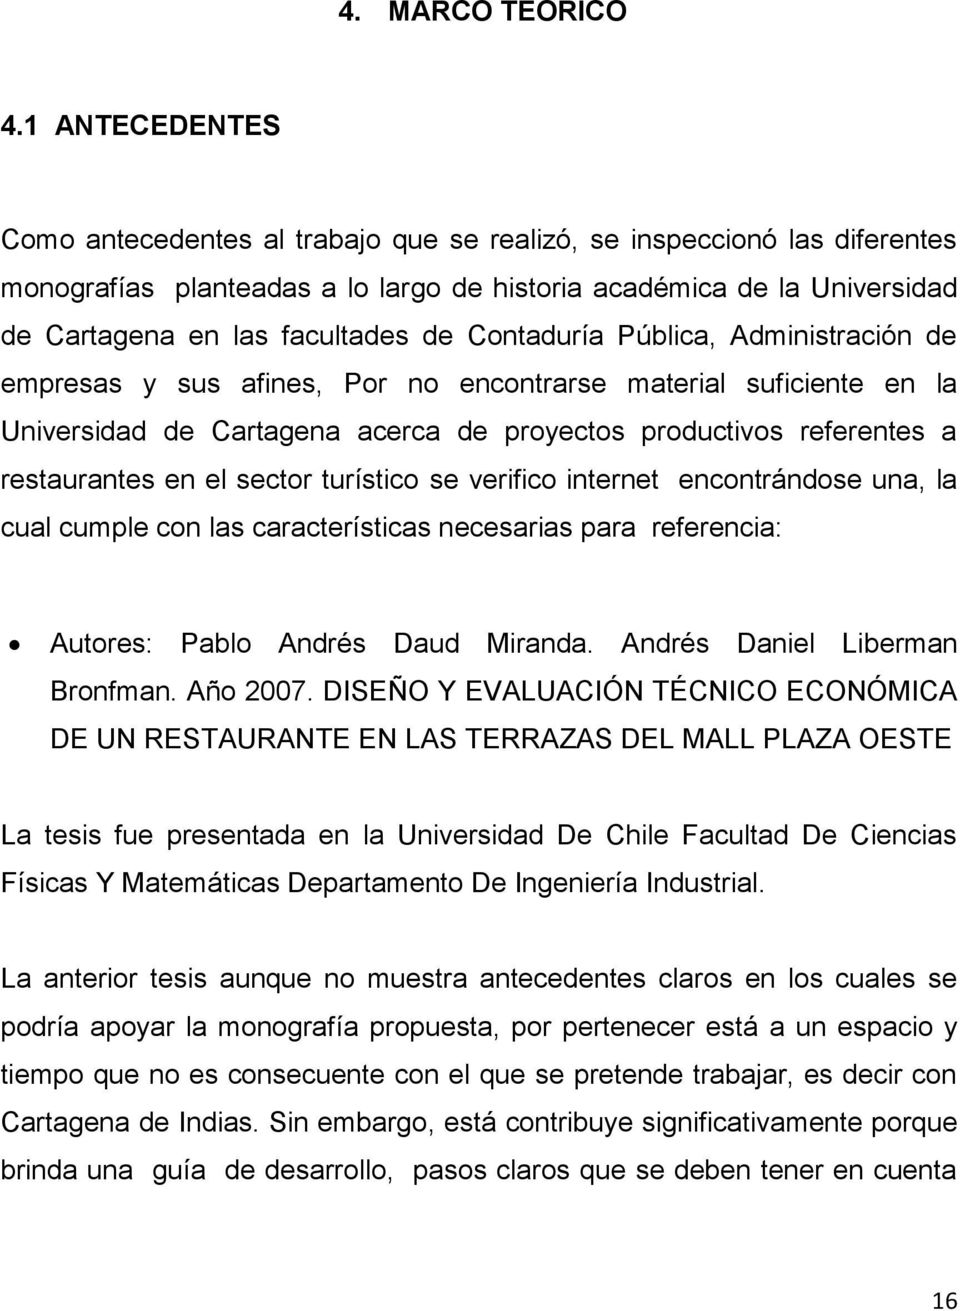 Contaduría Pública, Administración de empresas y sus afines, Por no encontrarse material suficiente en la Universidad de Cartagena acerca de proyectos productivos referentes a restaurantes en el